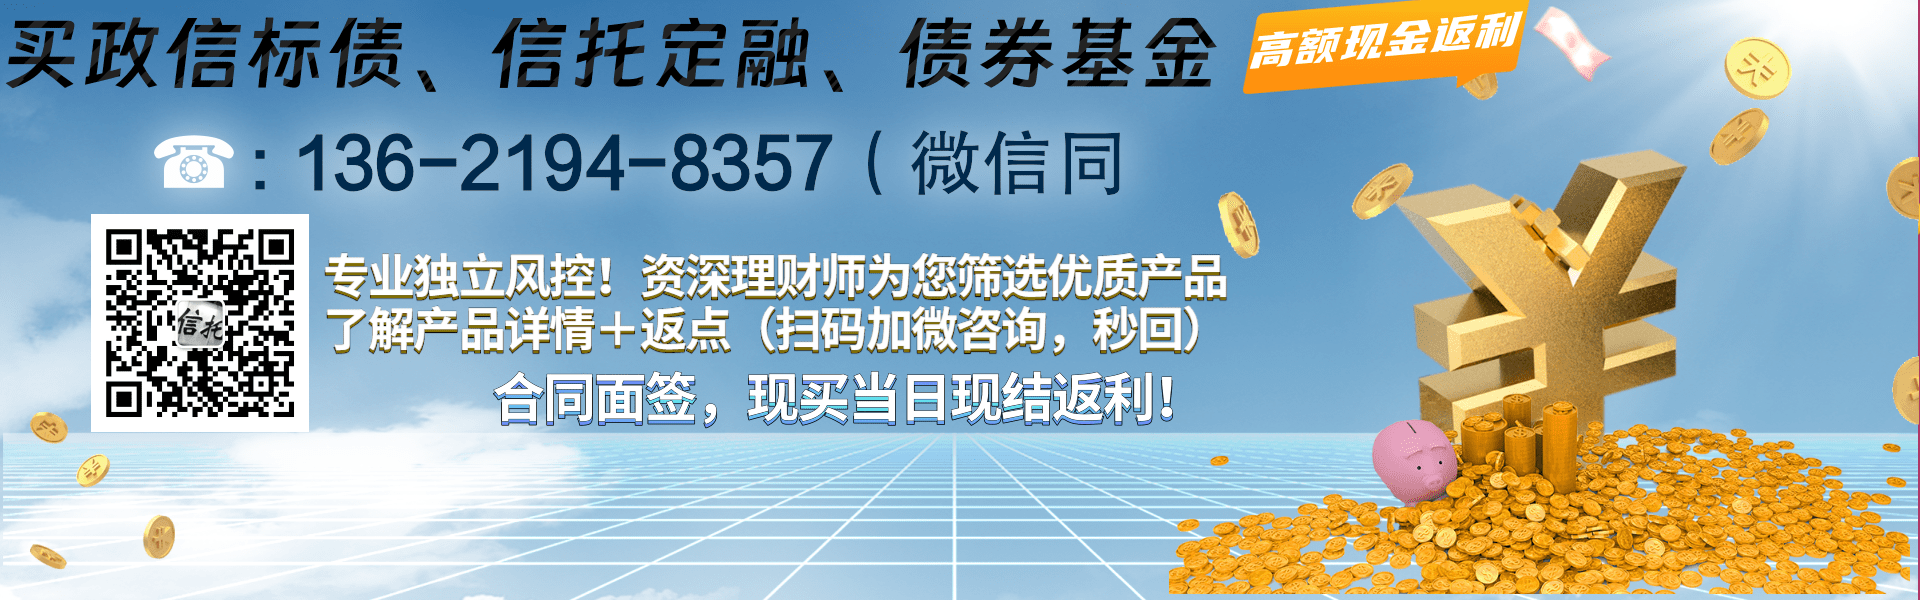 央企信托-173号寿光城投标债集合资金信托计划